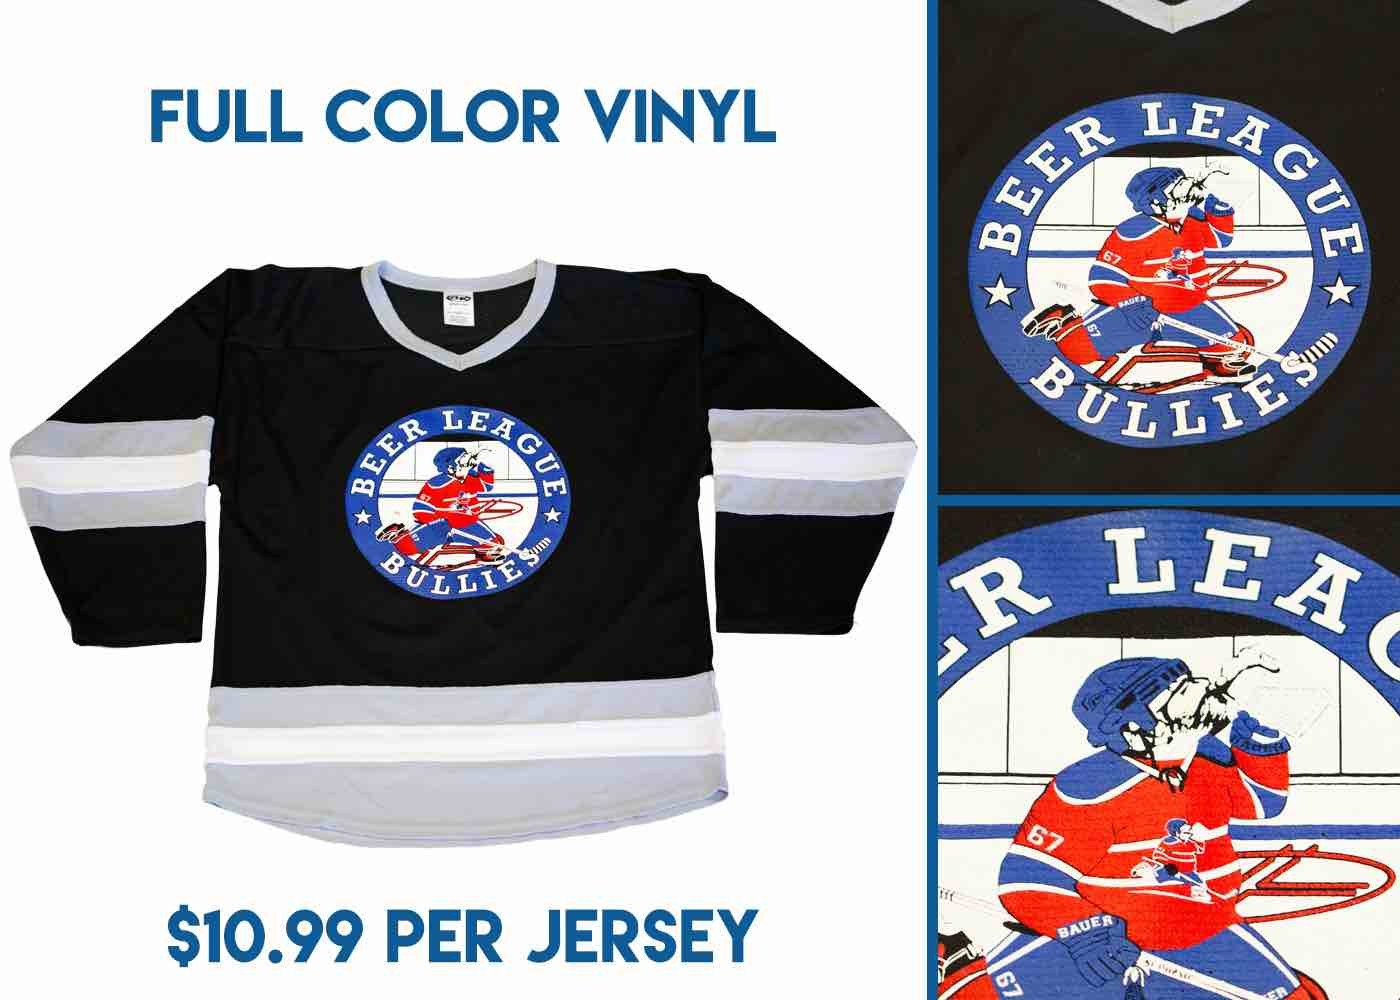 https://discounthockey.com/cdn/shop/products/full-color-vinyl-with-price_2751dd8c-0dd5-4e85-8fdd-9b909df56583.jpg?v=1548975970